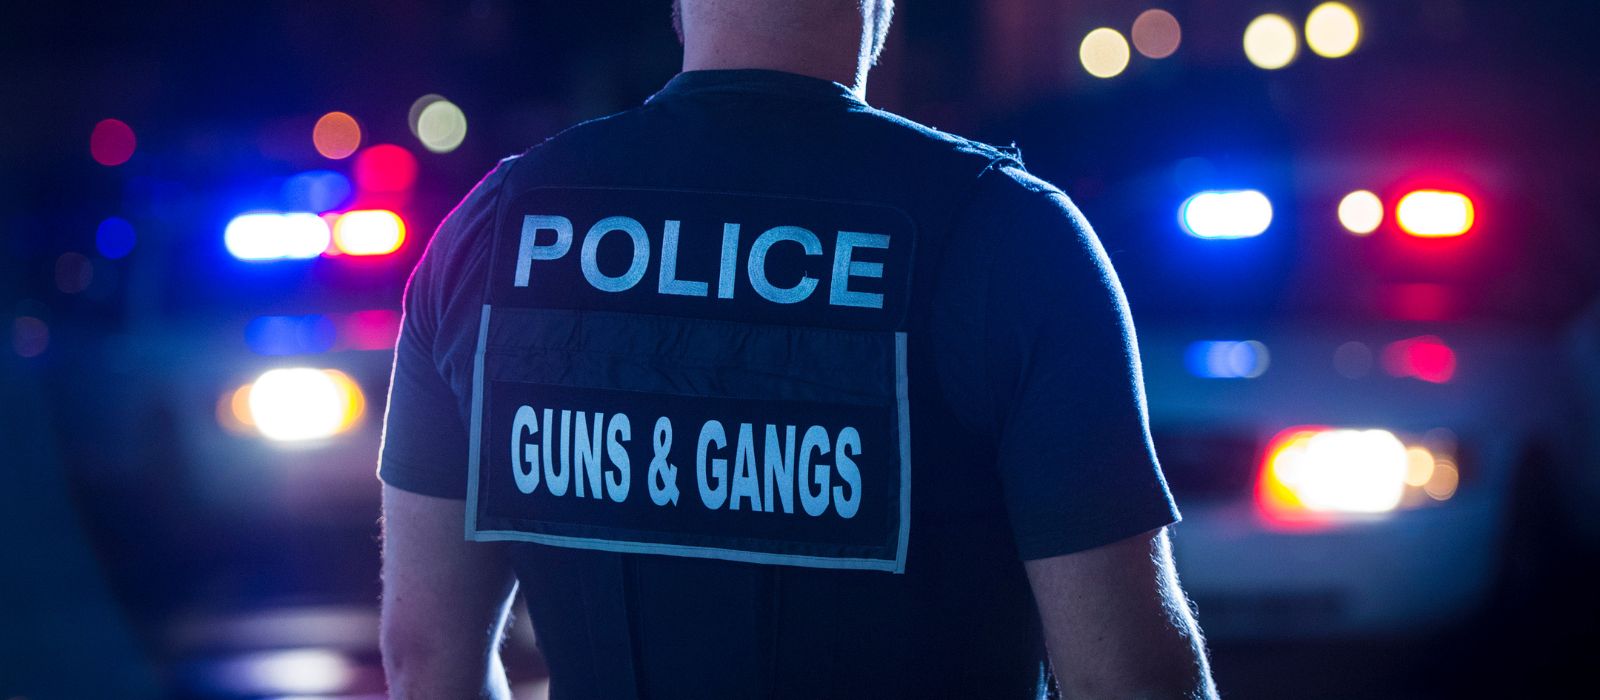 Un membre de l'Unité des armes à feu et des gangs se tient devant deux voitures de police, la nuit.